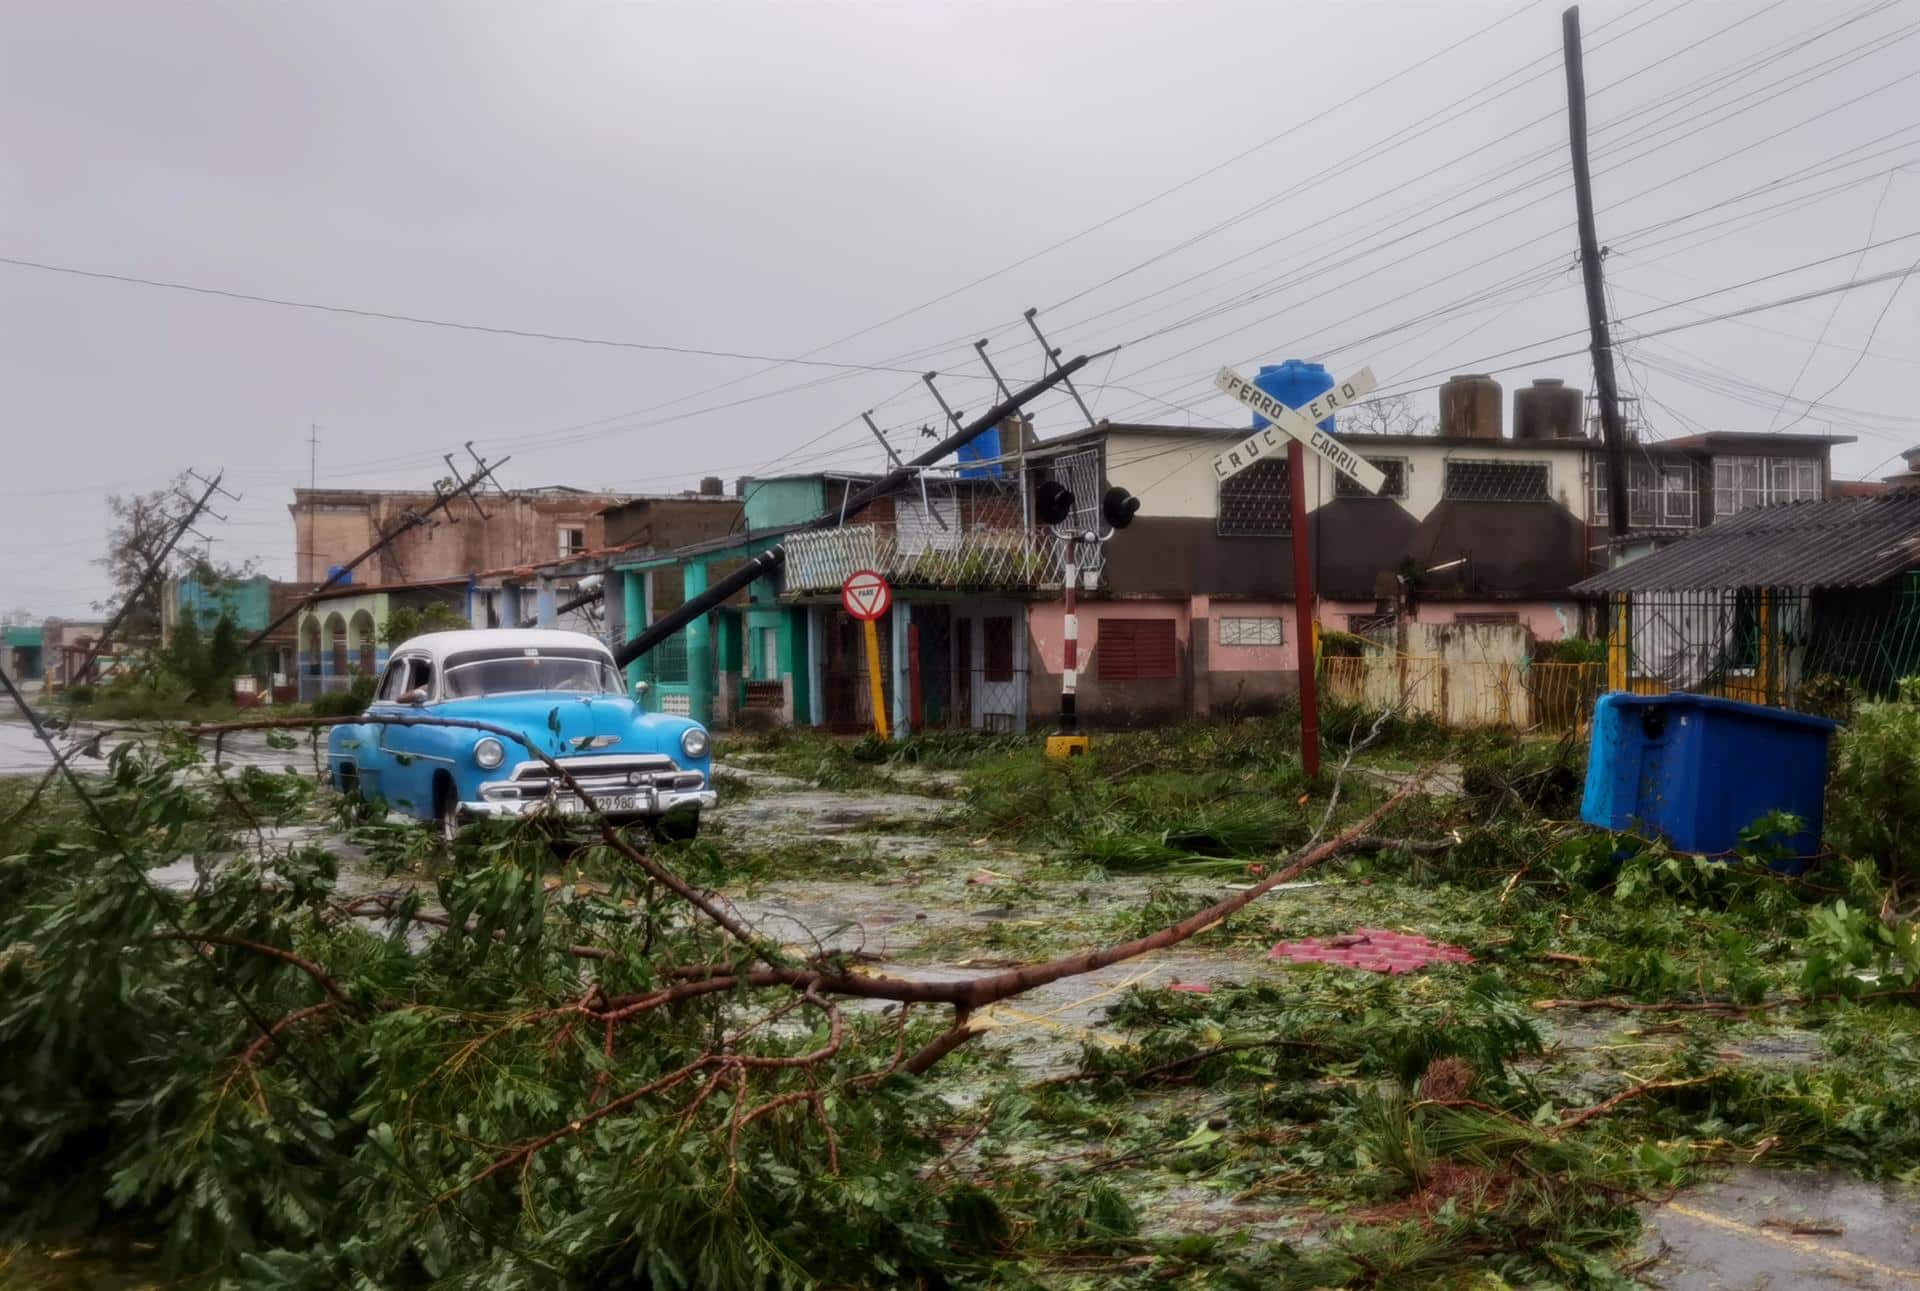 Cuba se queda sin luz tras paso del huracán Ian